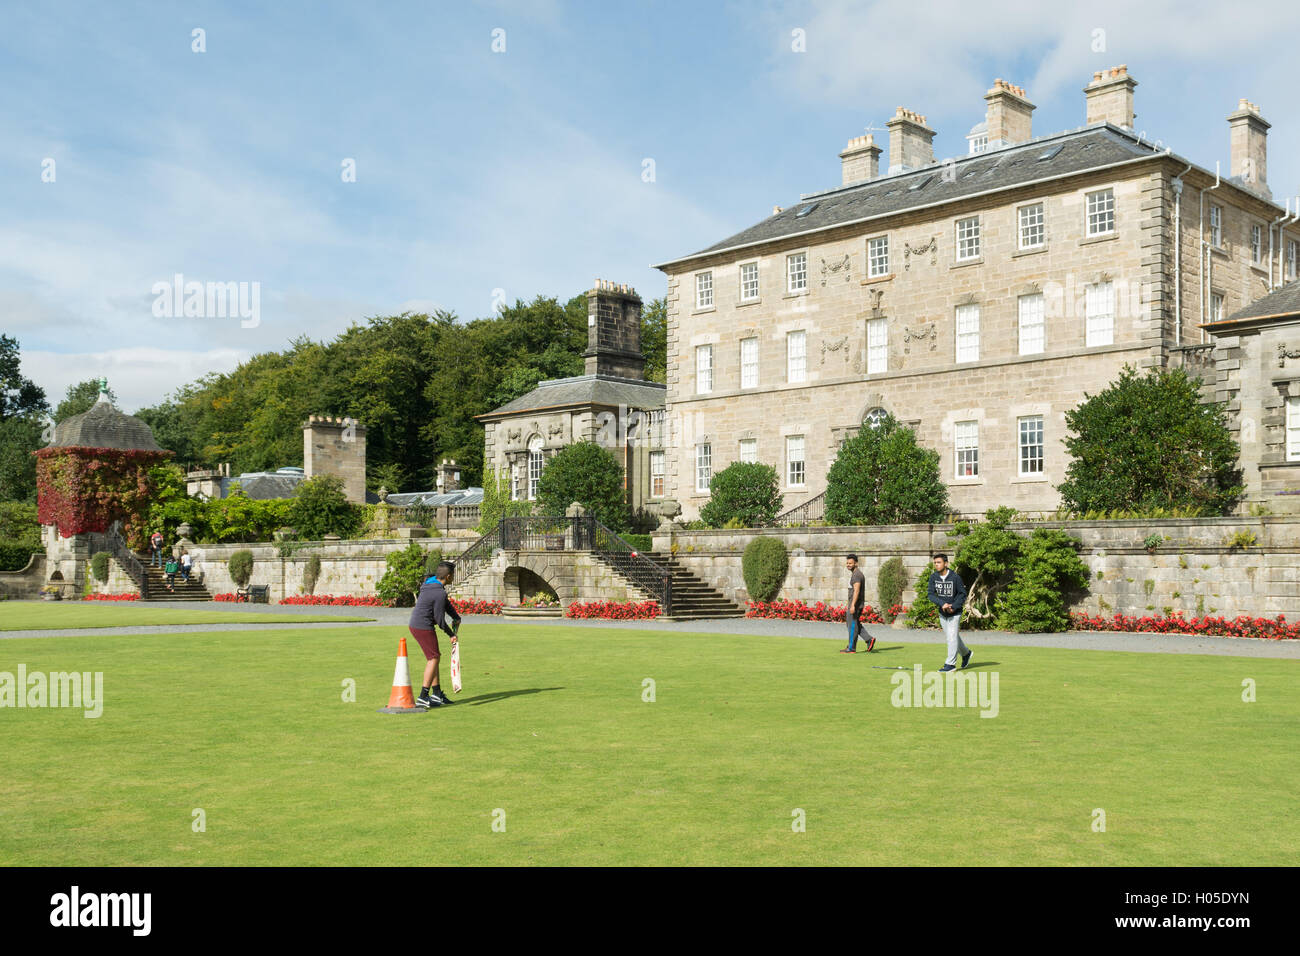 Spielen Sie Kricket auf Rasen am Eingang des Pollok House, Pollok Country Park, Glasgow, Schottland Stockfoto